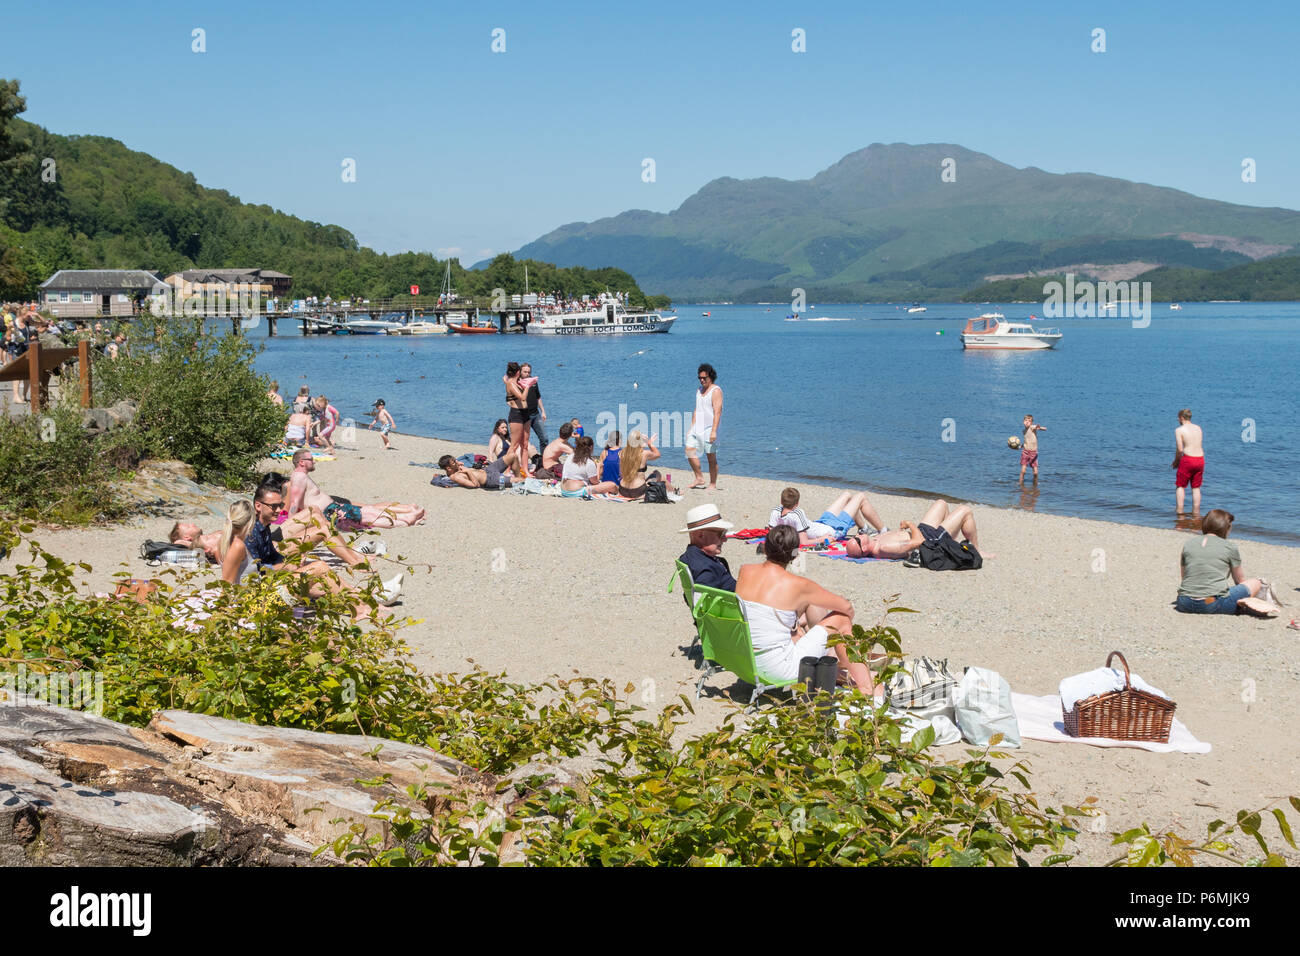 Spiaggia di Luss, Loch Lomond e Ben Lomond occupato in una calda giornata estiva, Scotland, Regno Unito Foto Stock